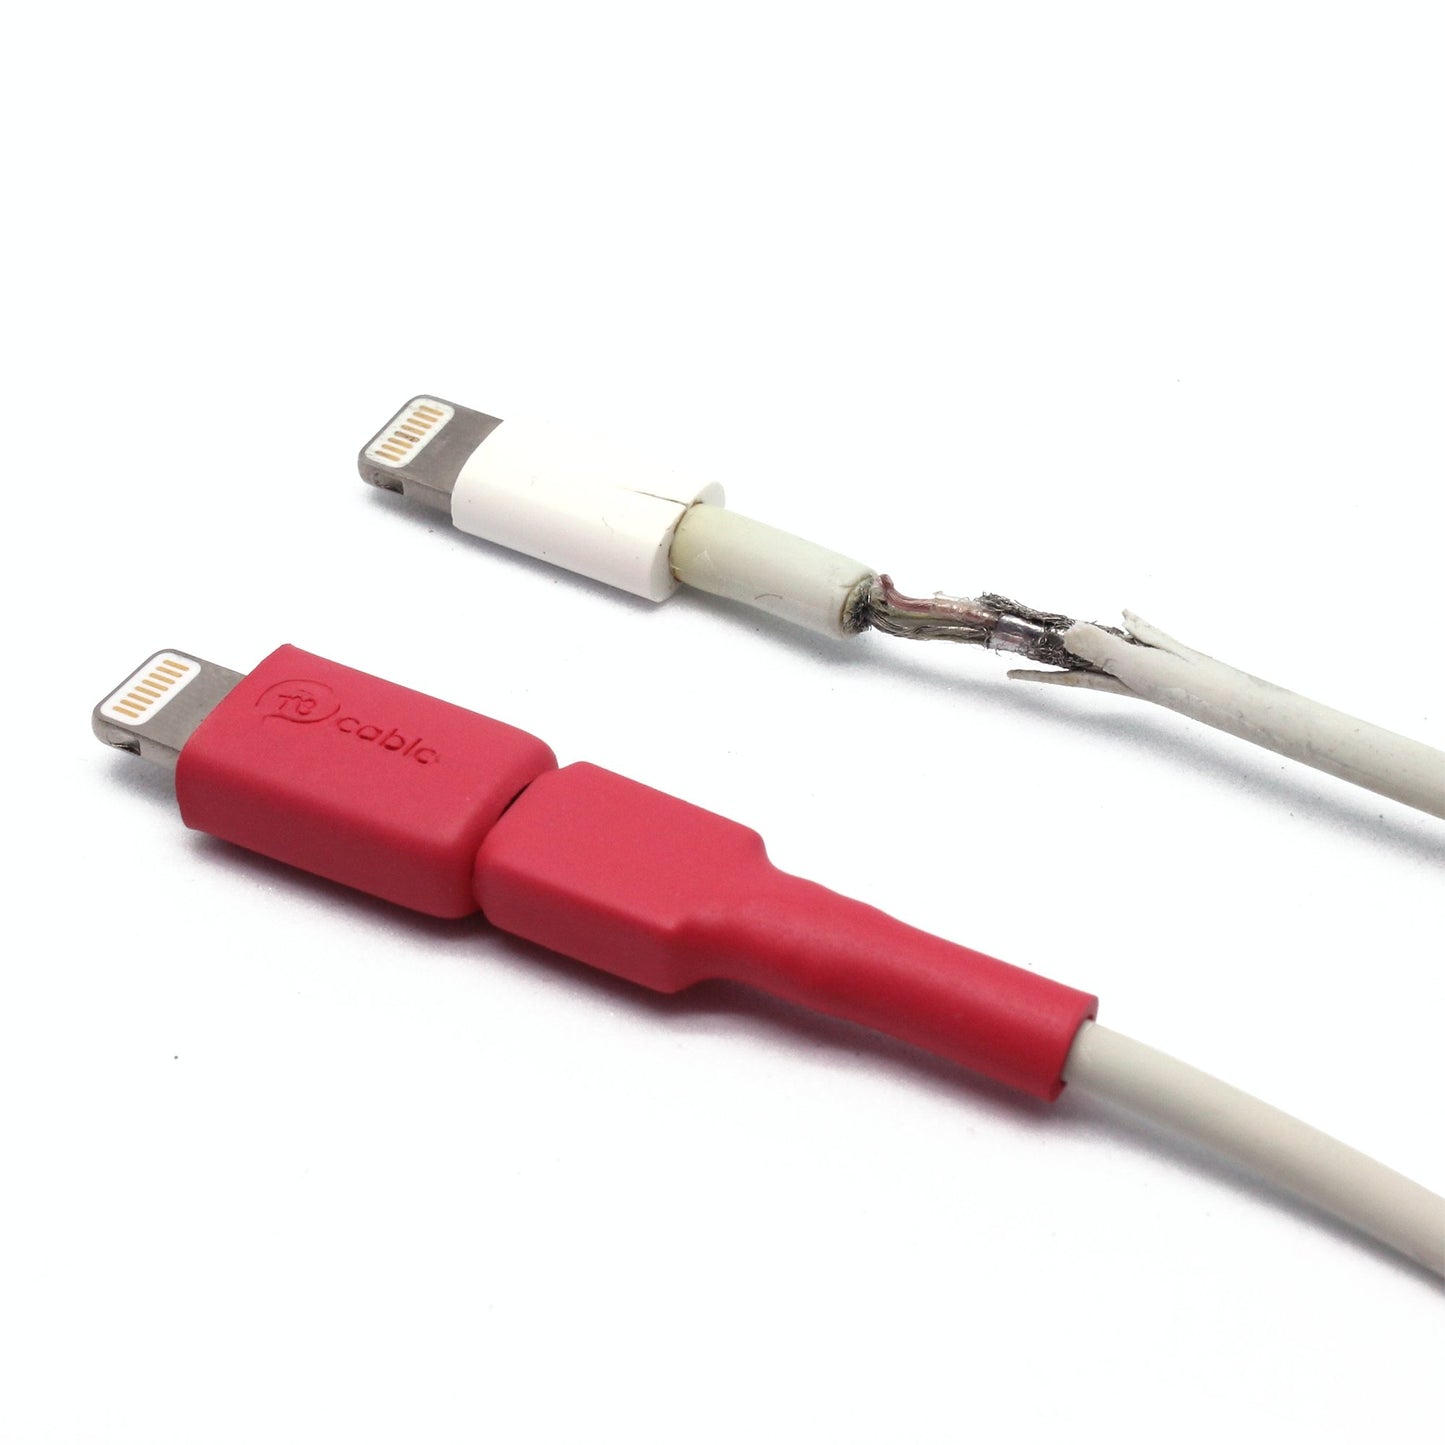 Vergleich: Ein recable mit Lightning Adapter in roter Farbe und ein defektes Lightning-Kabel der Marke mit dem Apfellogo